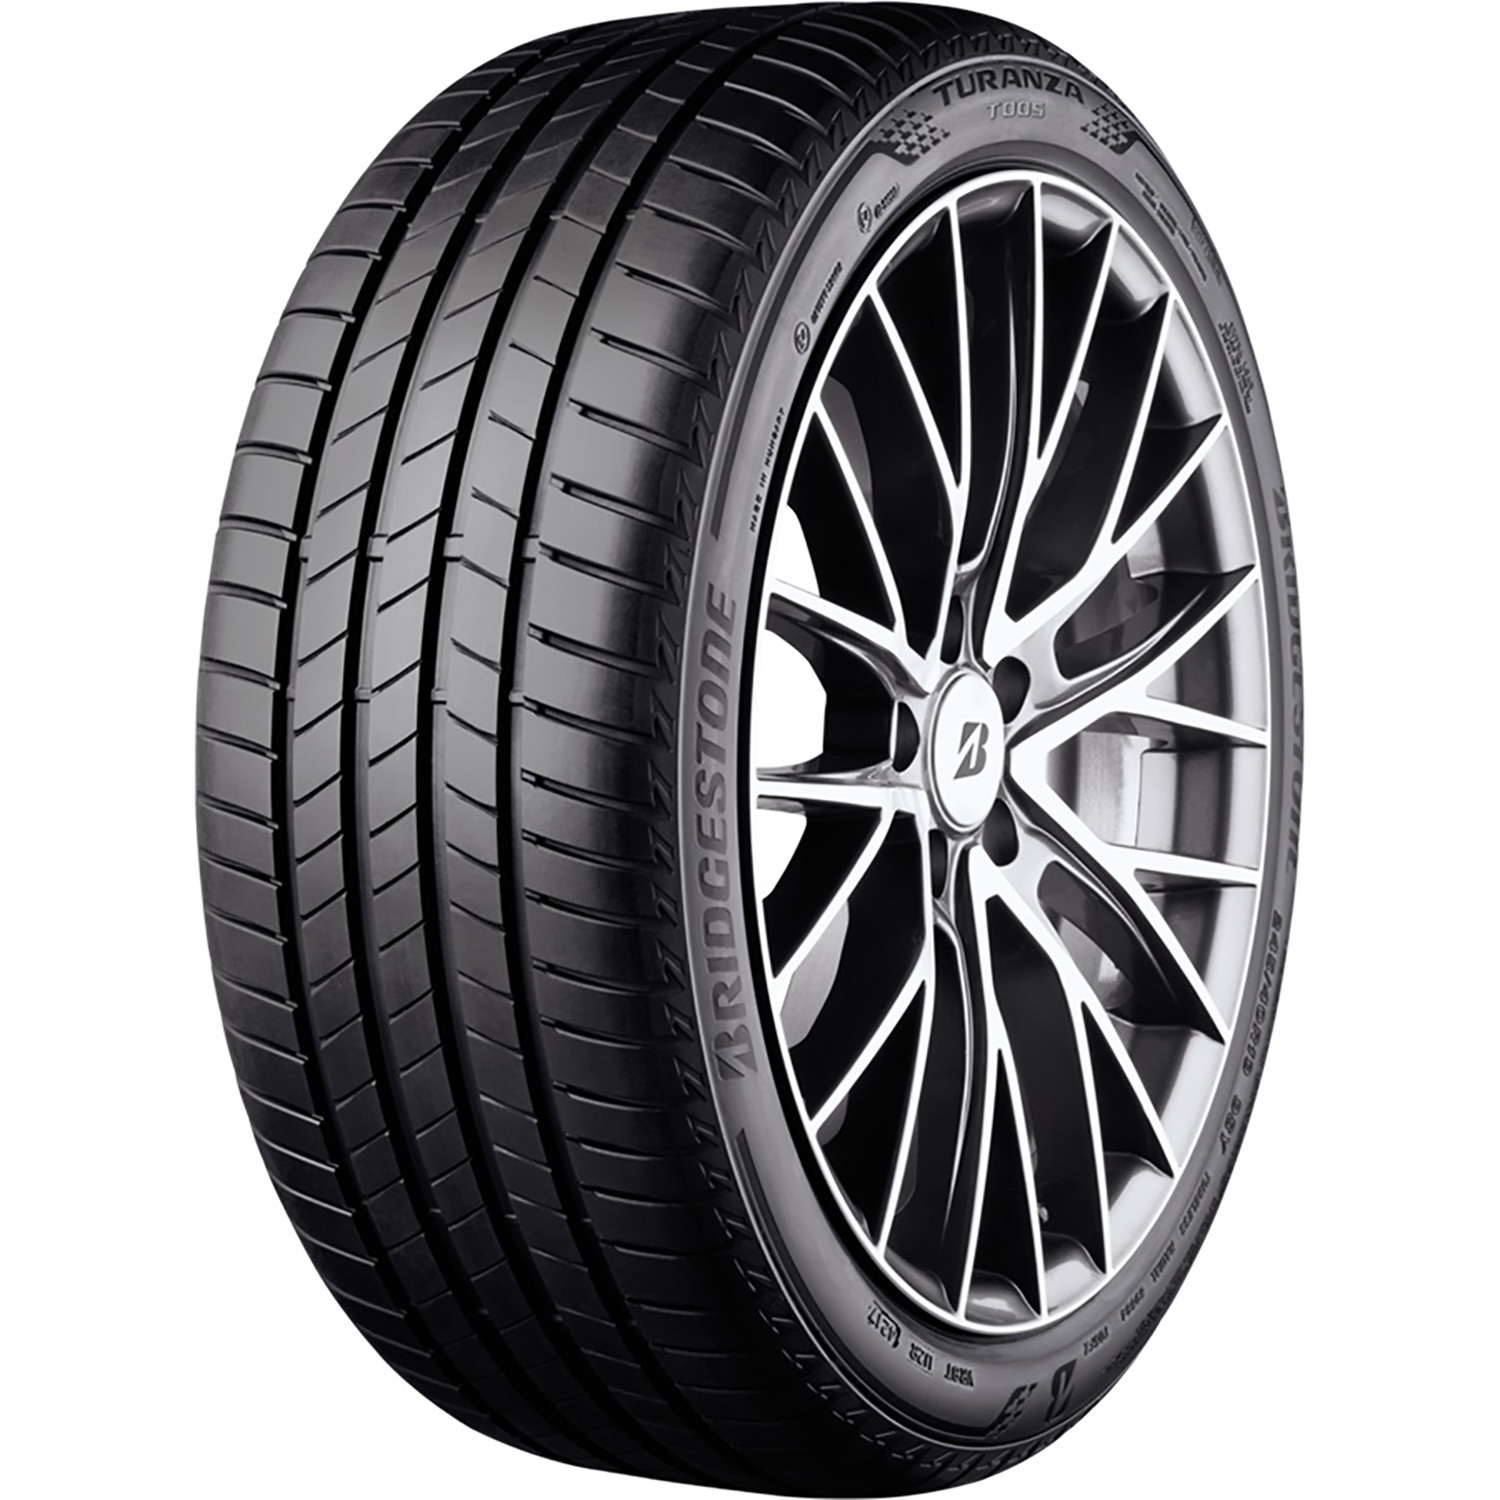 Автомобильная шина Bridgestone TURANZA T005 DRIVEGUARD Run Flat 245/40 R18 97Y turanza t005 245 45 r18 100y xl run flat bmw